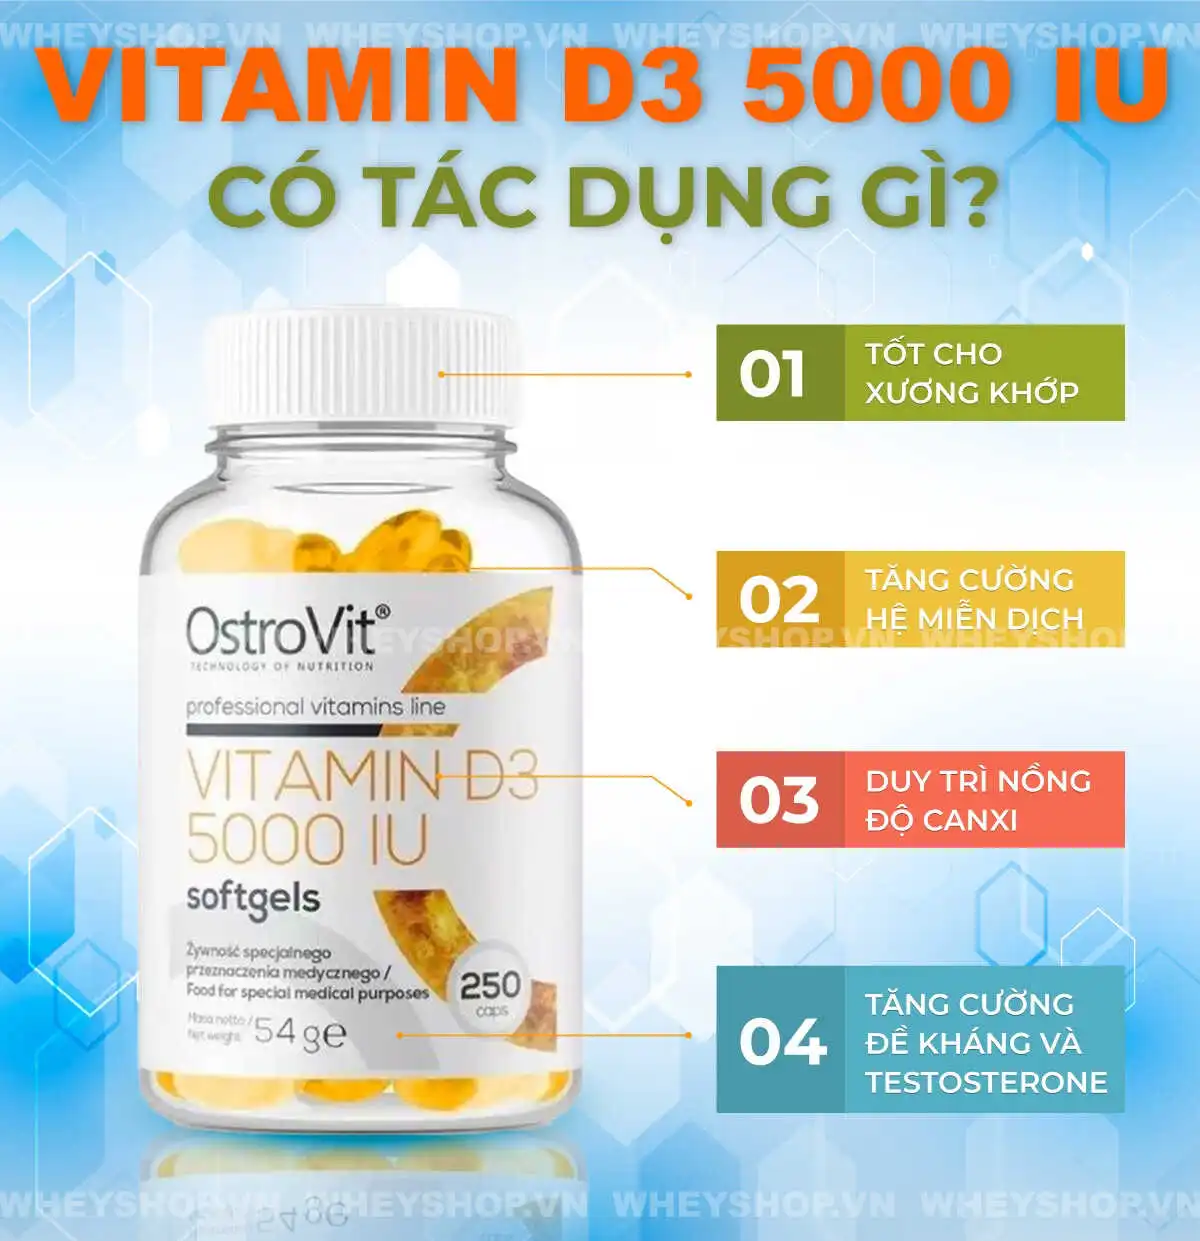 Vitamine D3 là gì, Vitamin D3 5000 IU có tác dụng gì, Vitamin D3 Supplement mua ở đâu chính hãng, Cách dùng Vitamine D3 Supplement cho người lớn , tập gym ,...